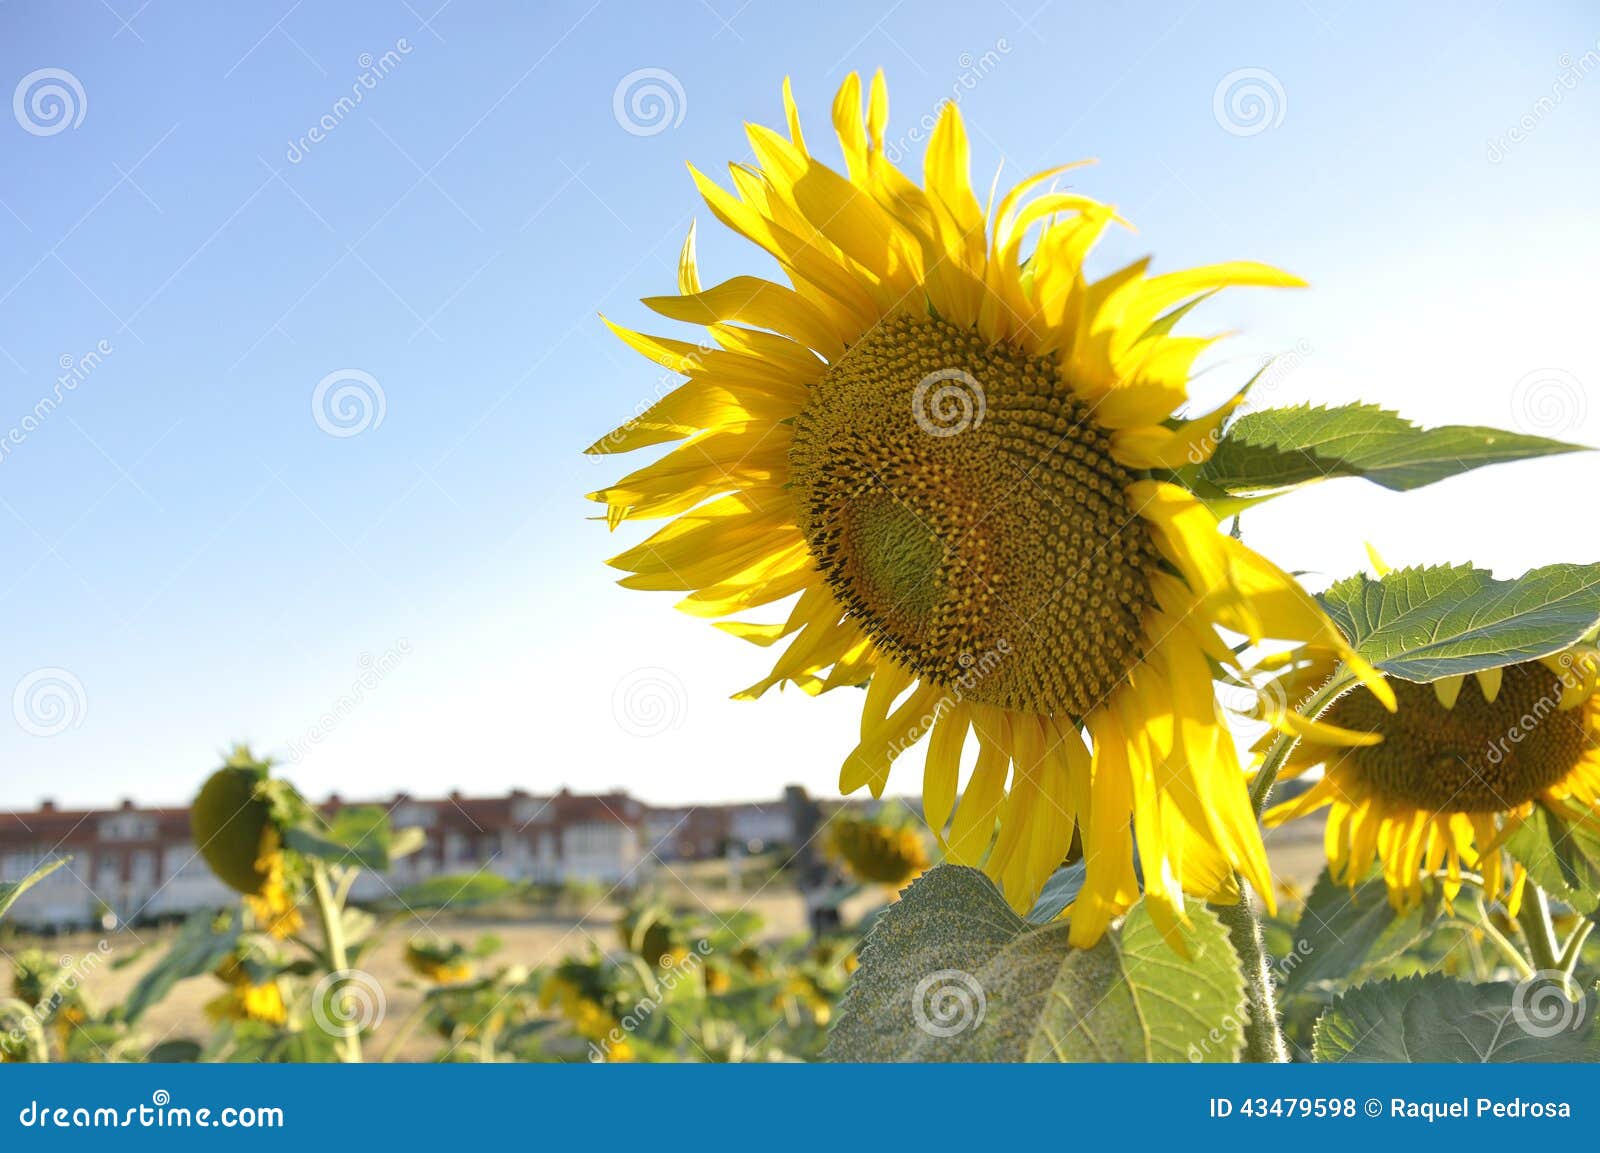 In de voorgrond huisvest een zonnebloem op een gebied van zonnebloemen op de achtergrond (uit nadruk) een klein dorp op een de zomerdag